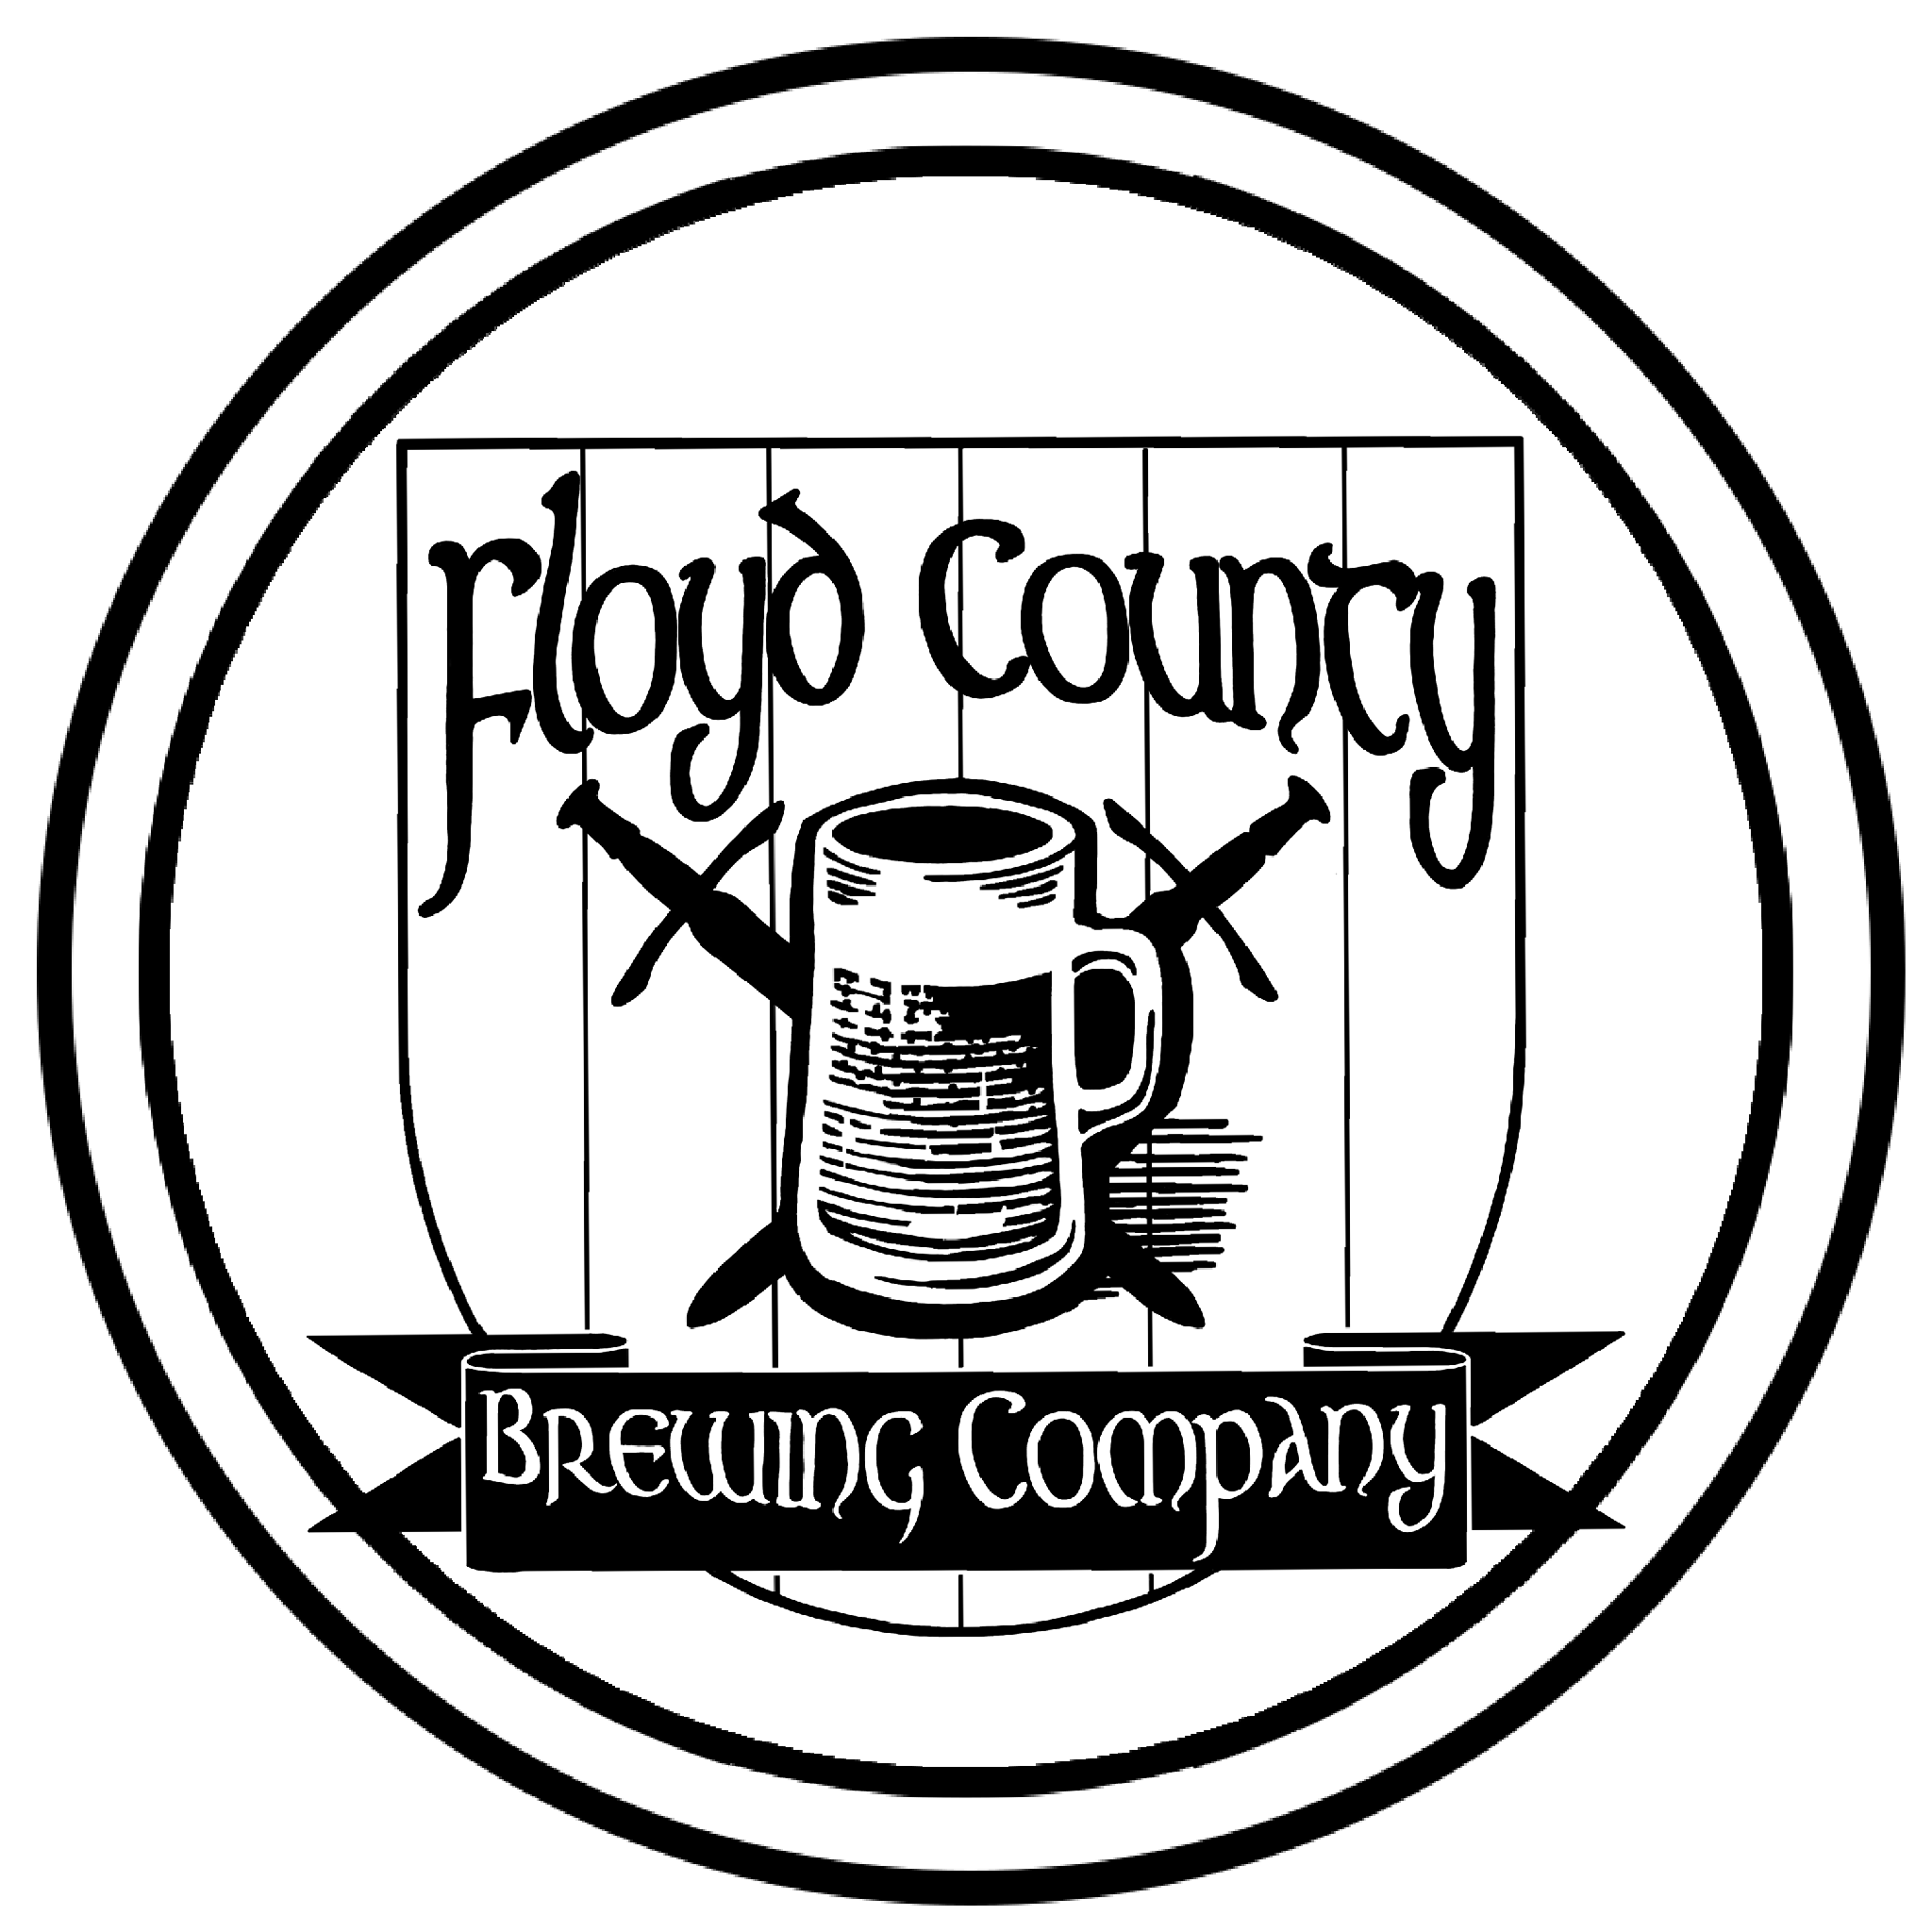 Floyd County Brewing